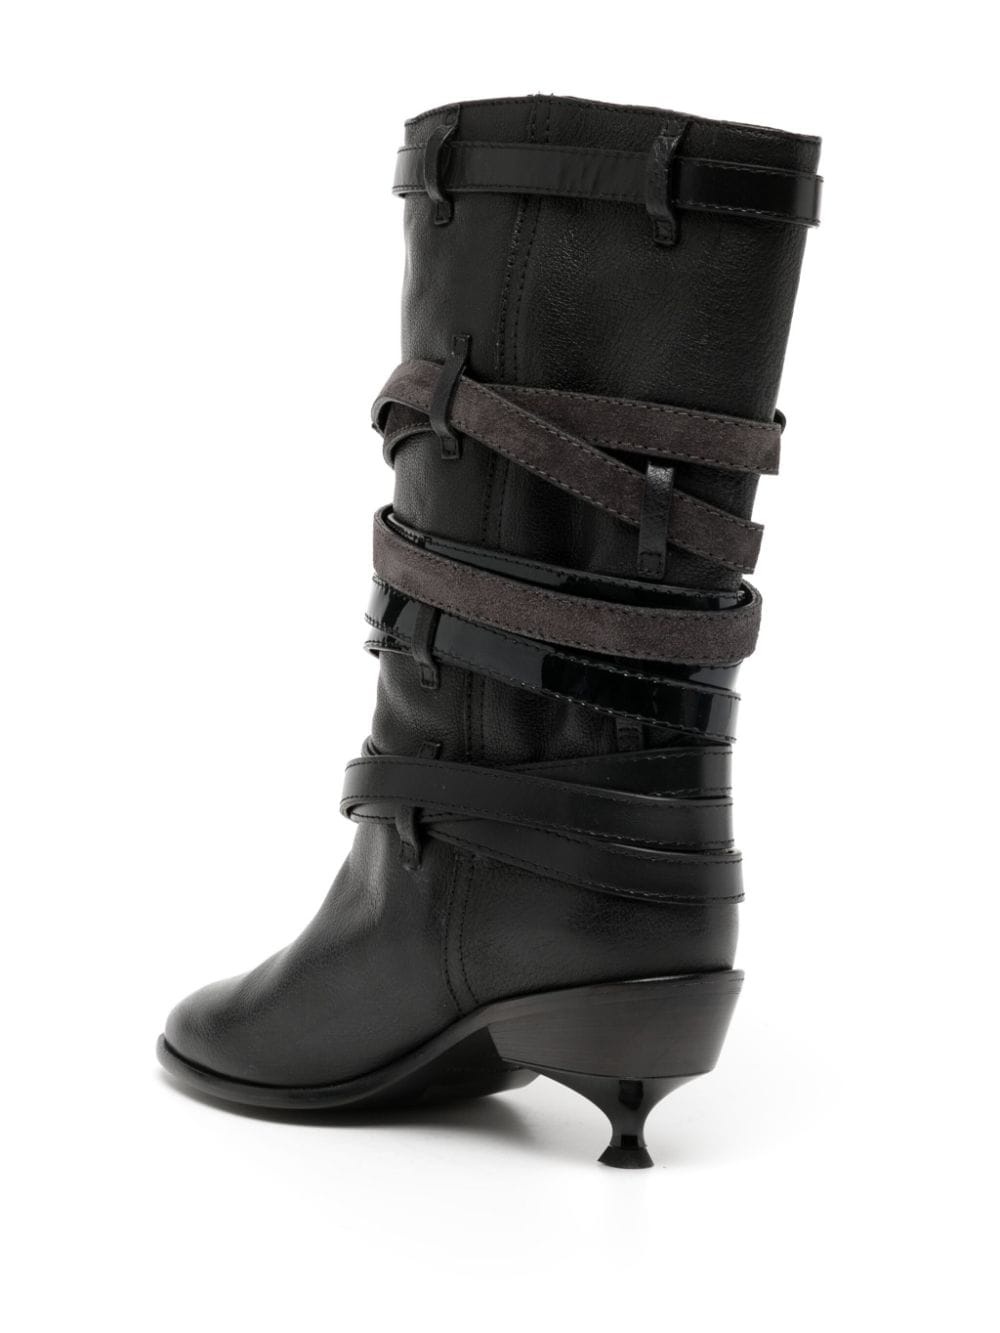 Quad belt leather boots - 3